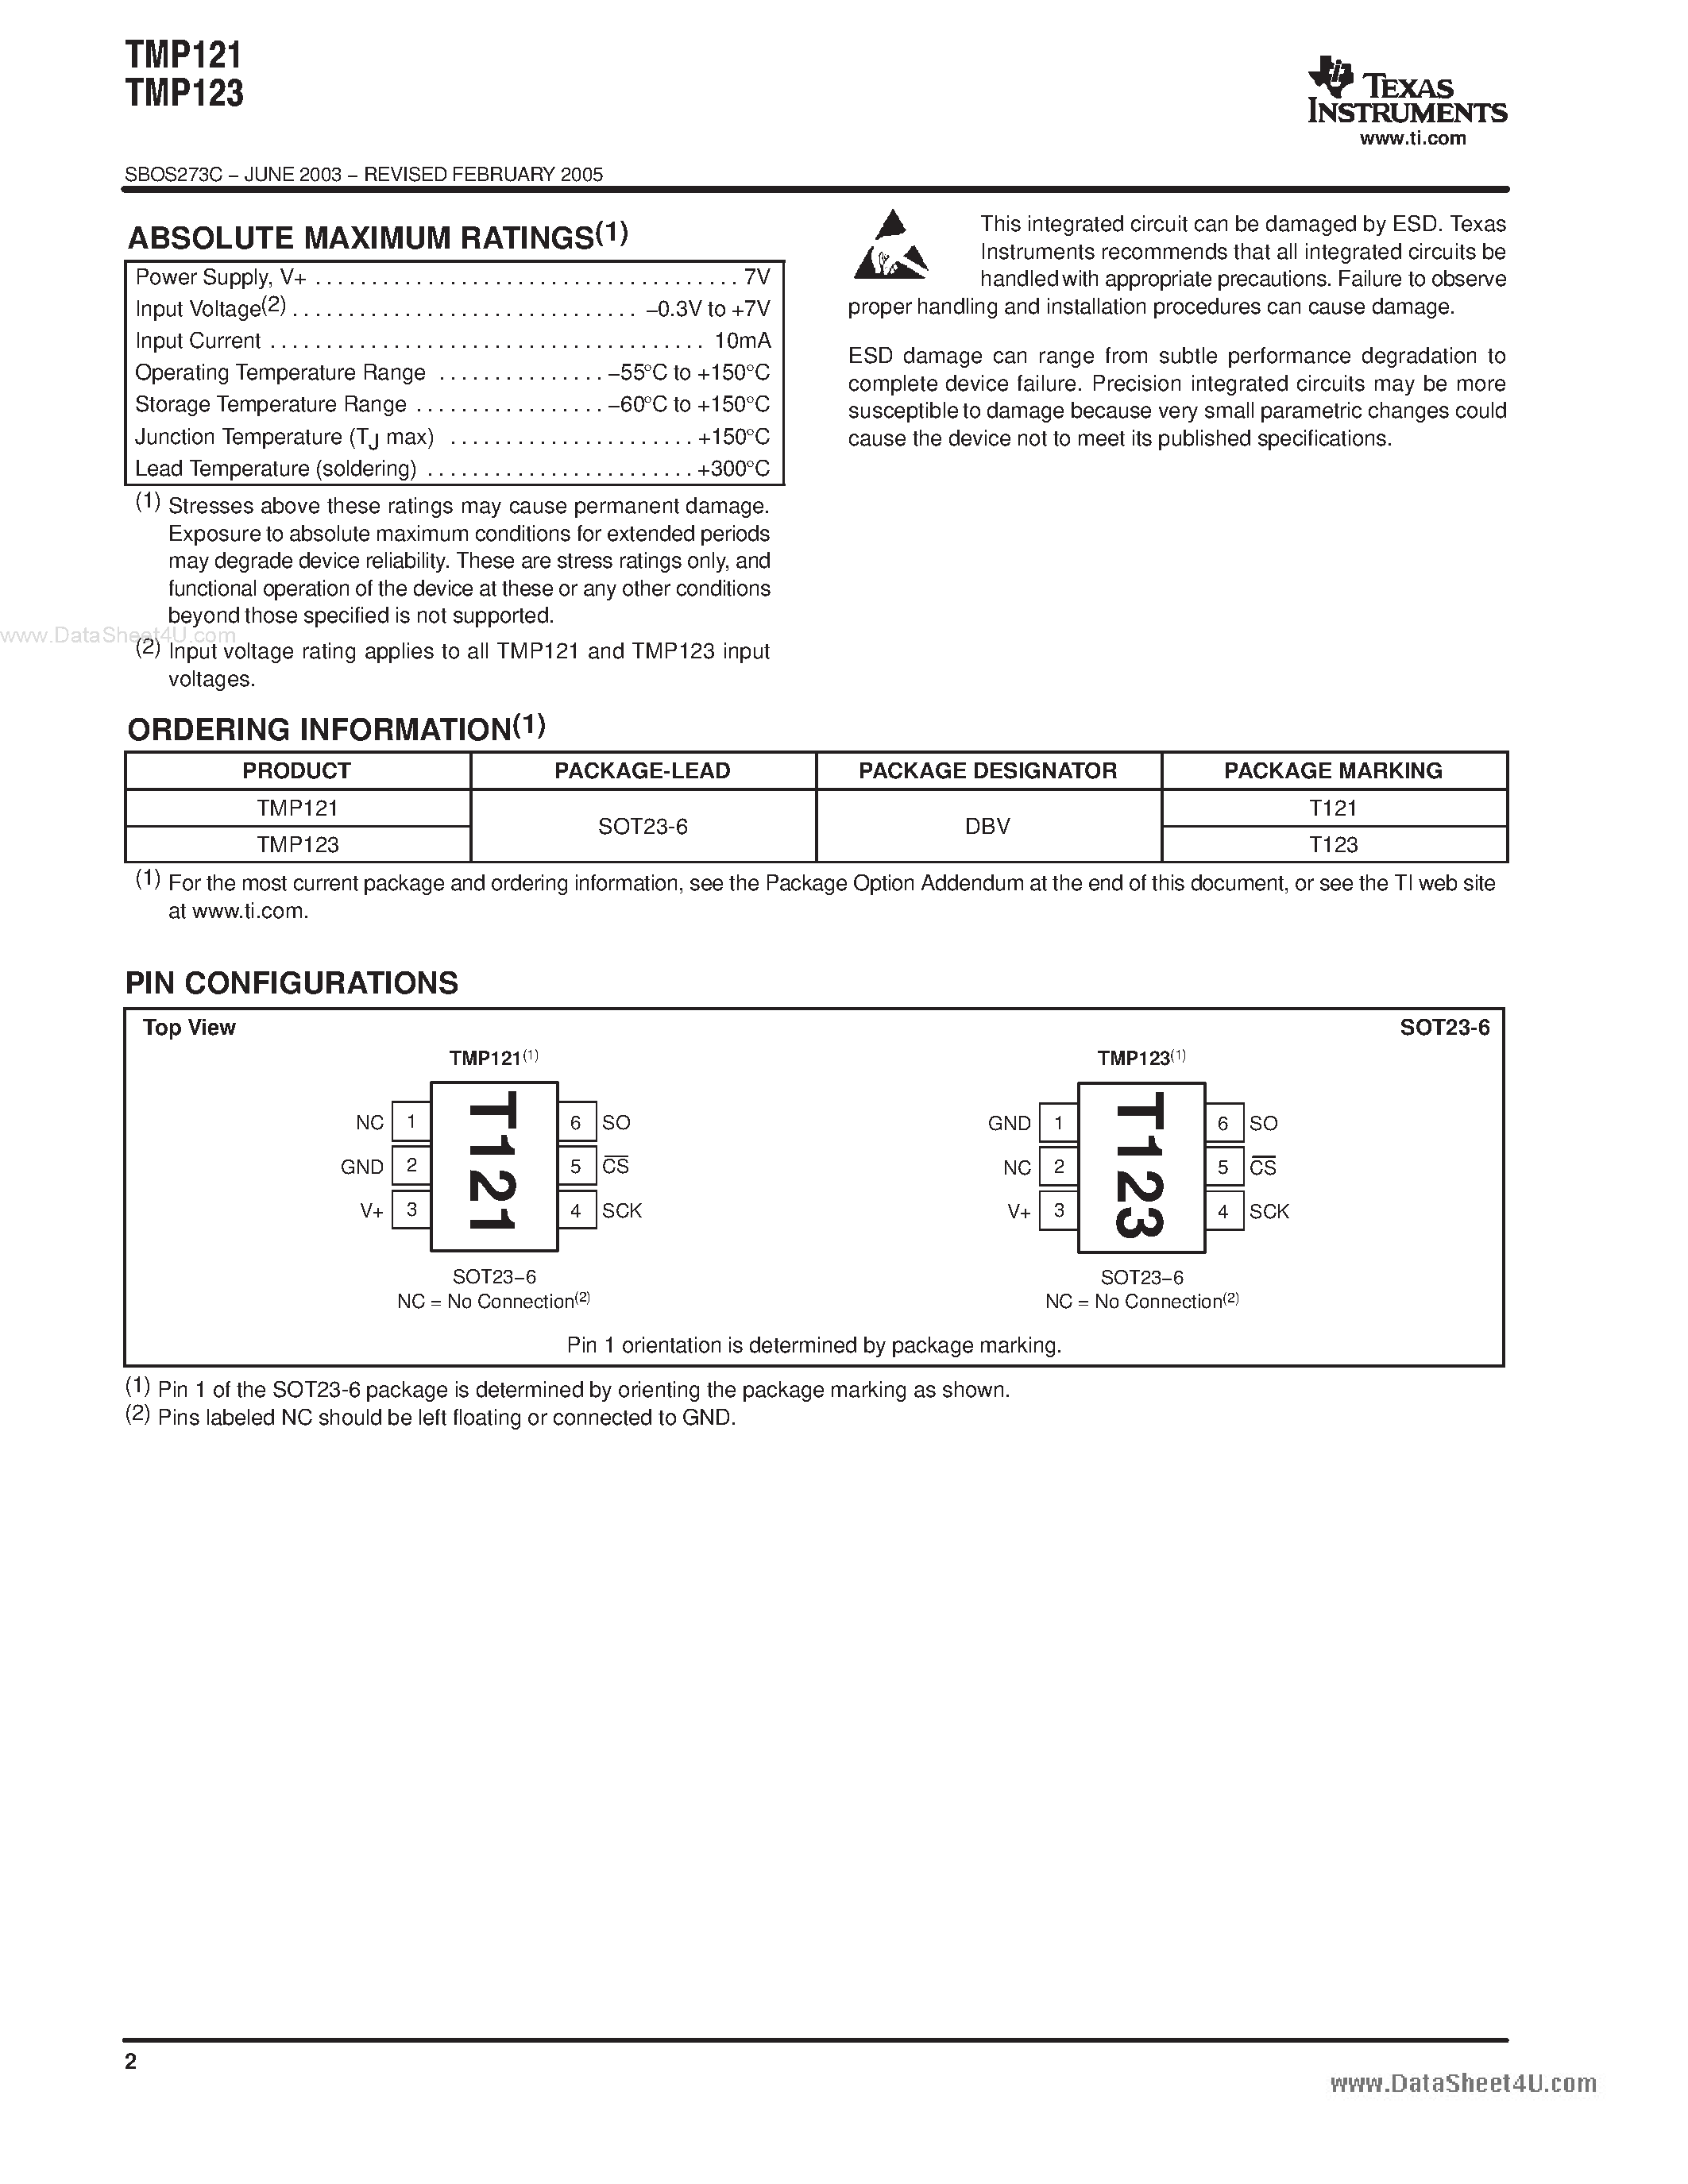 Datasheet TMP121 - (TMP121 / TMP123) 1.5C Accurate Digital Temperature Sensor page 2